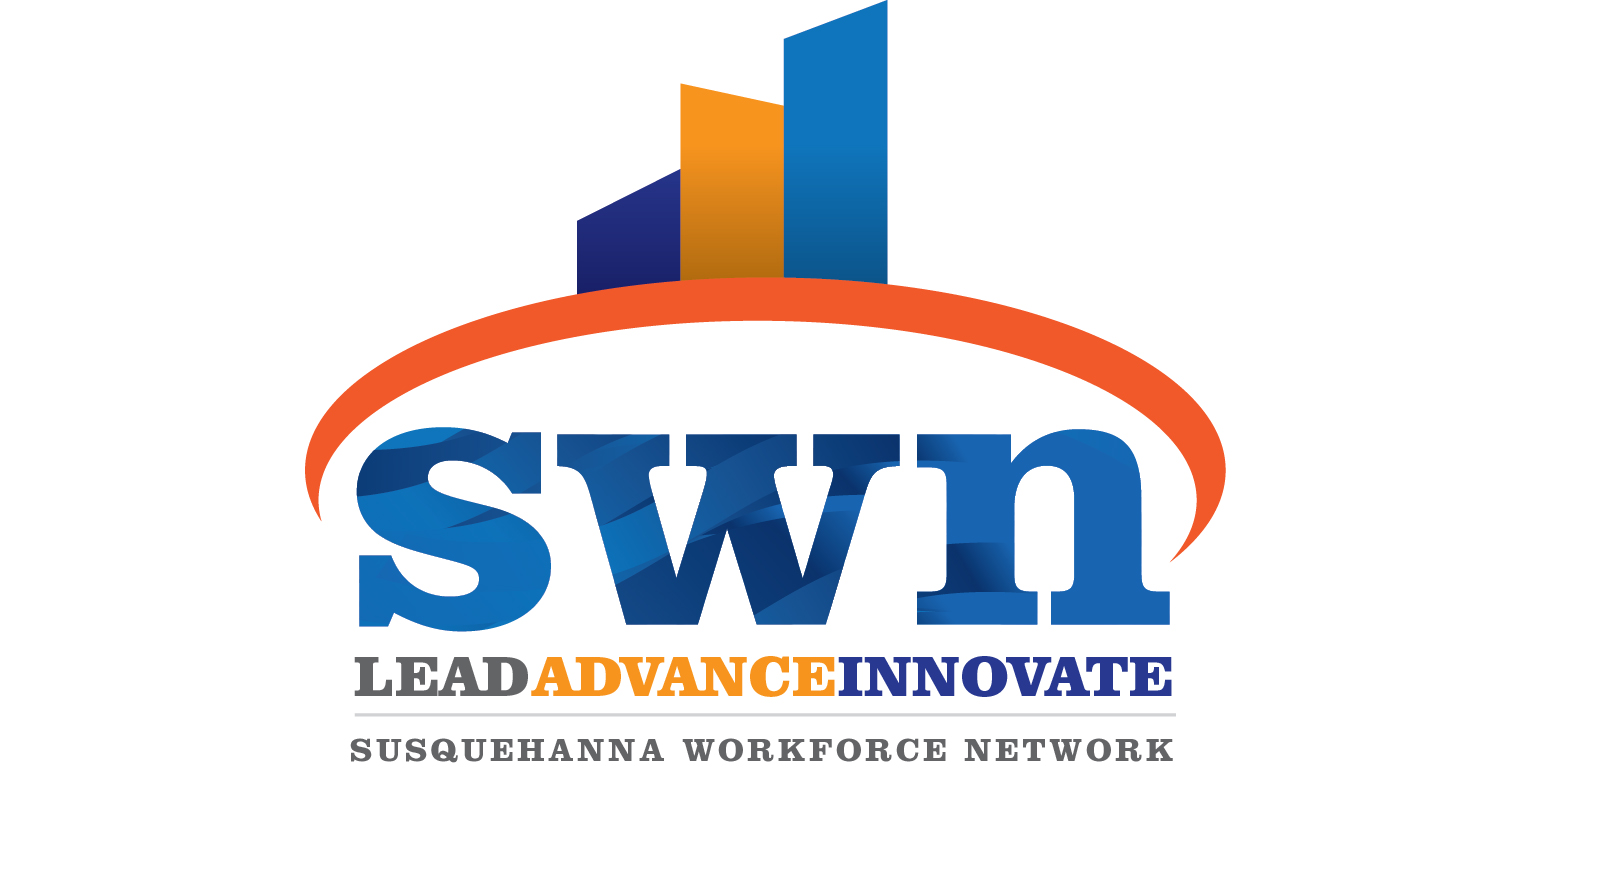 Susquehanna Workforce Network